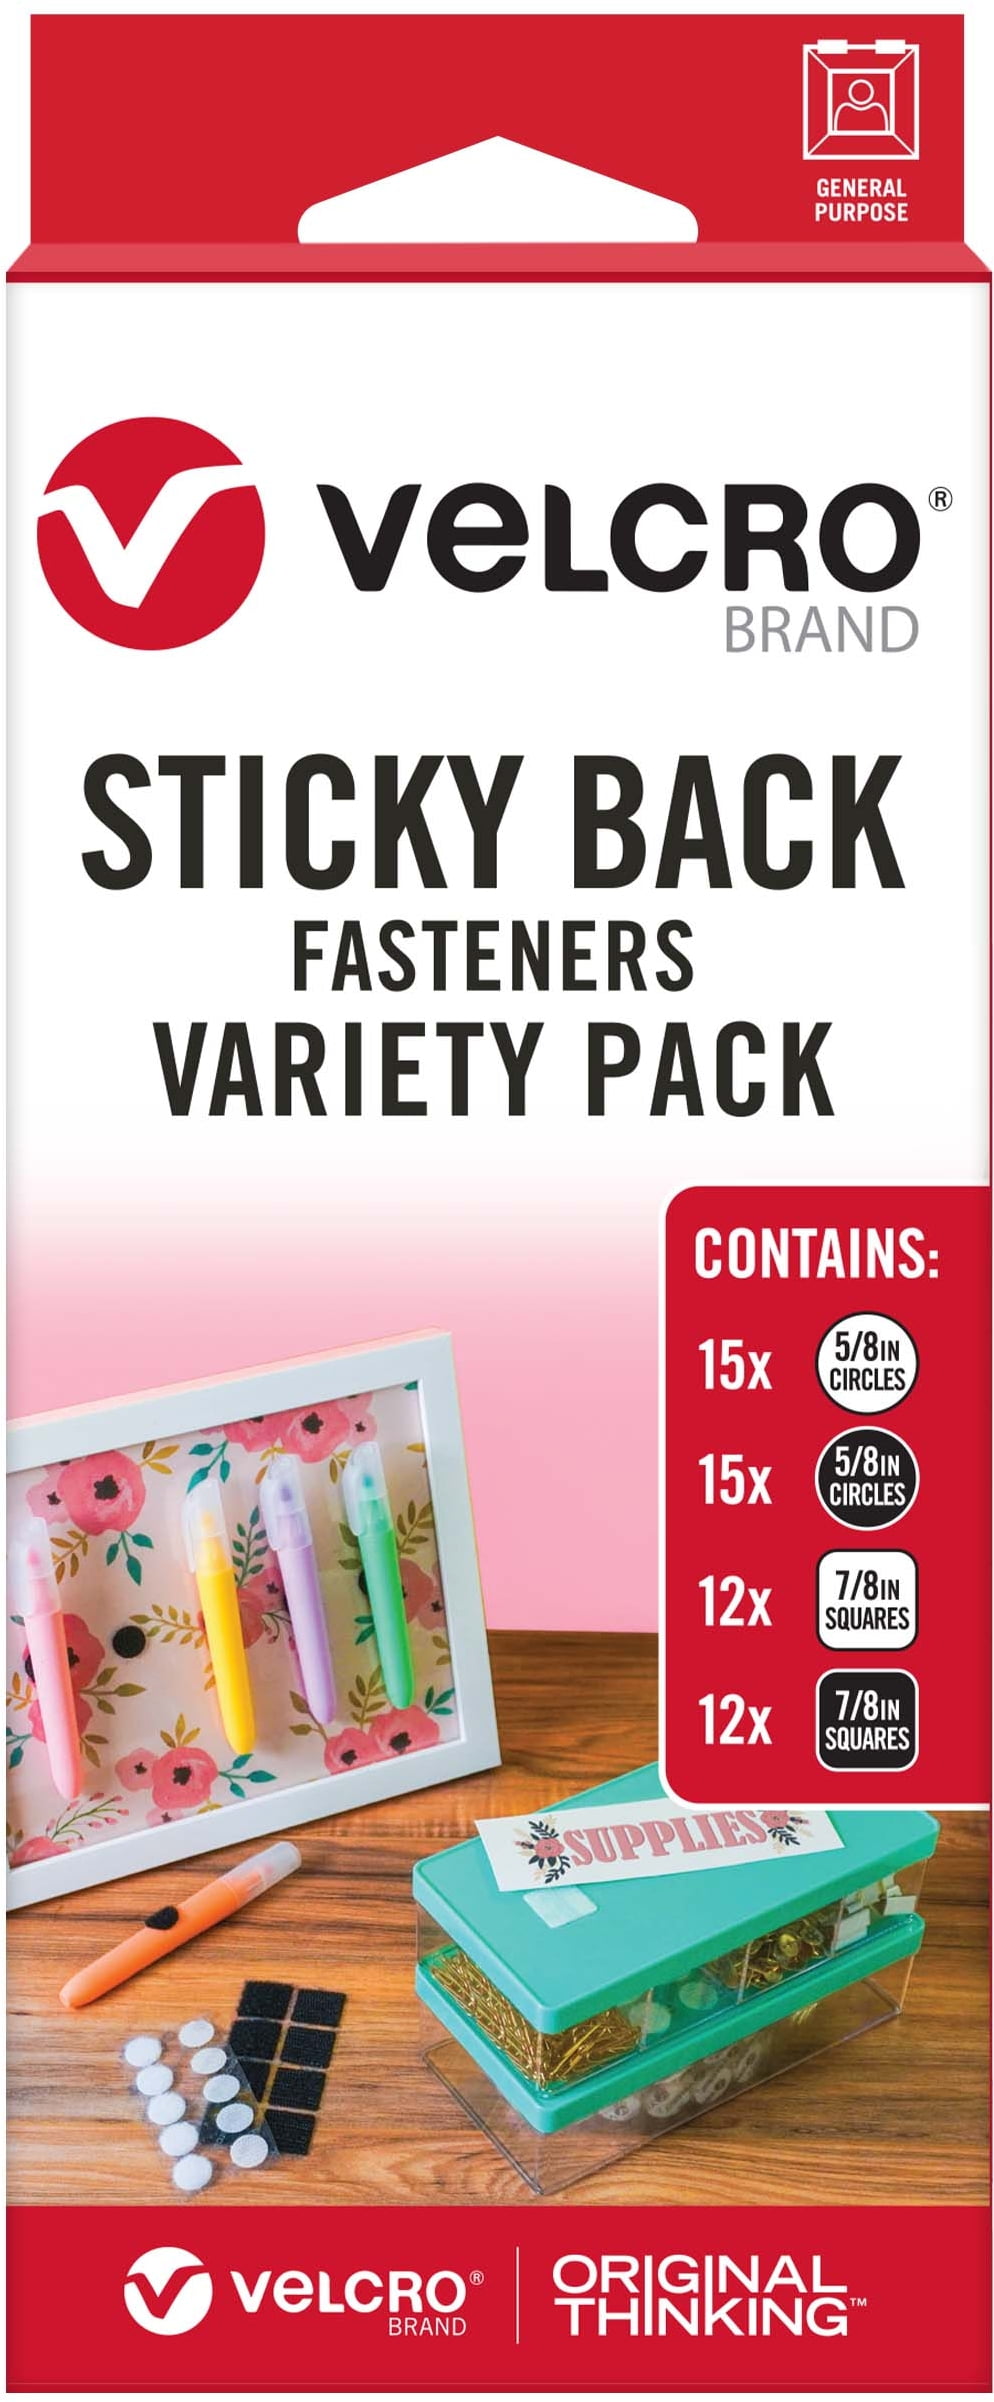 Velcro Sticky Back Variety Pack - 1 Each